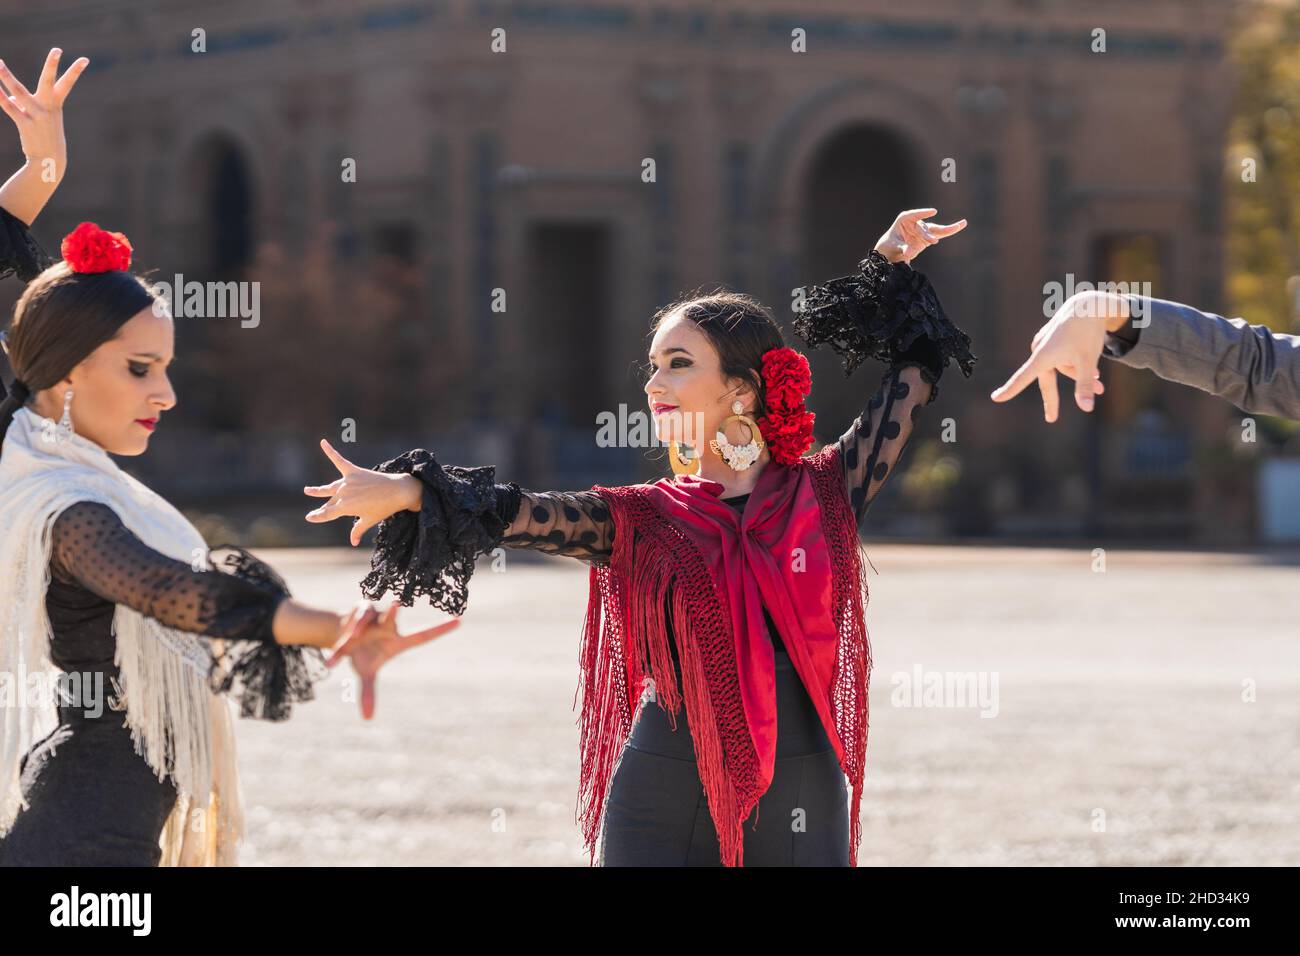 Trois personnes dansant le flamenco en costumes traditionnels sur une place Banque D'Images